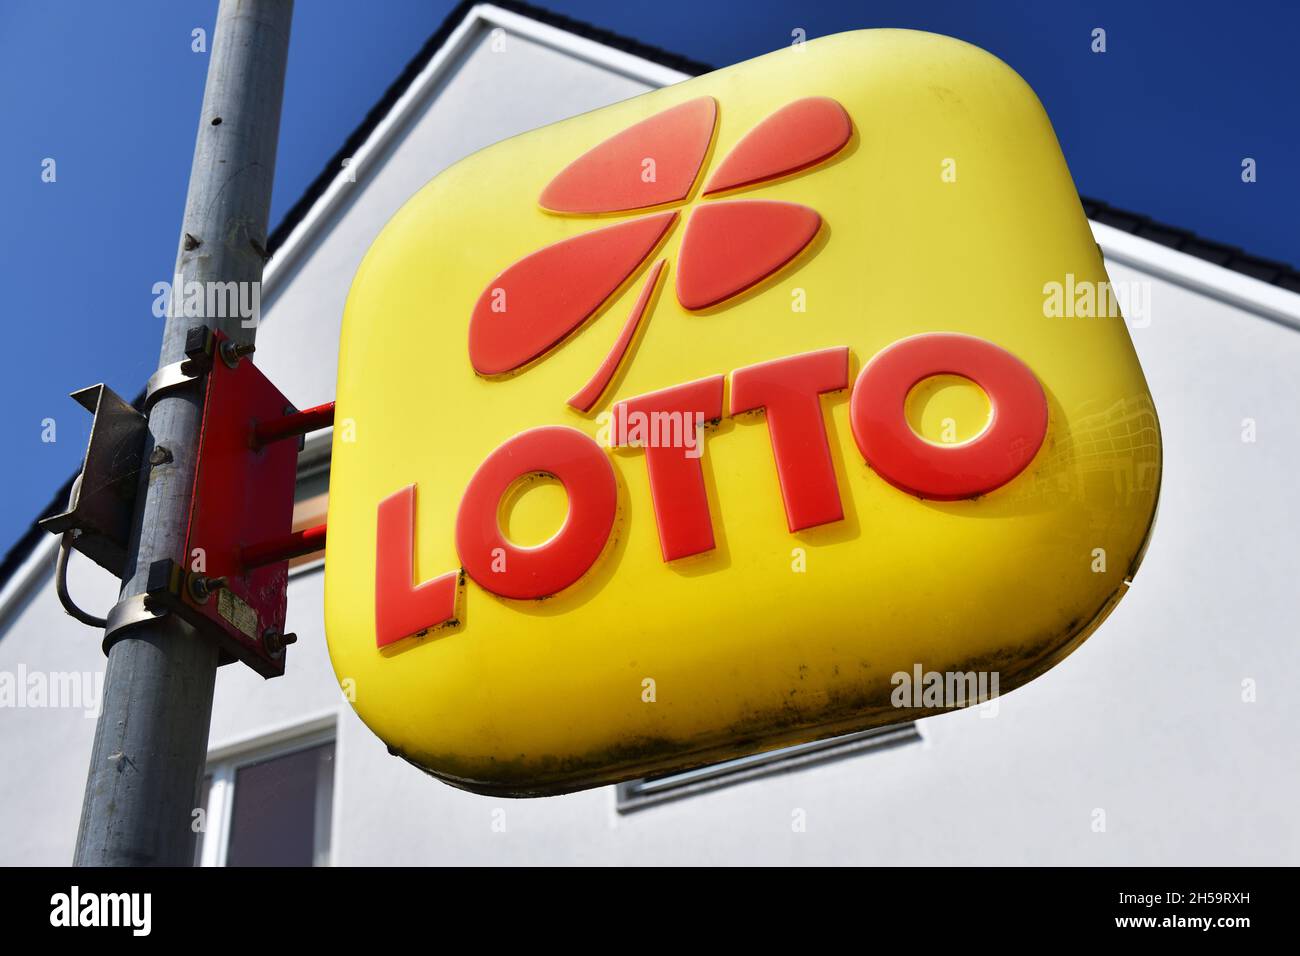 Lotto-Schild an einem Kiosk in Scharbeutz, Schleswig-Holstein Stock Photo